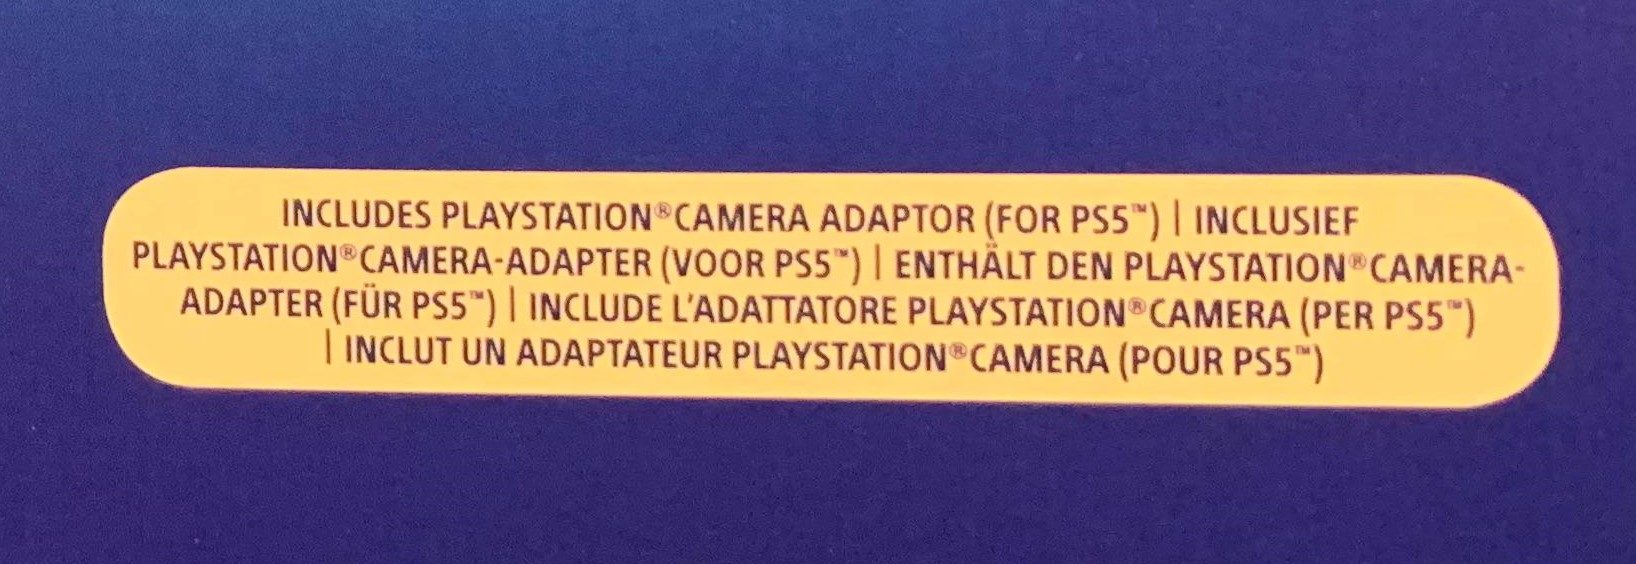 ps5 camera adapter